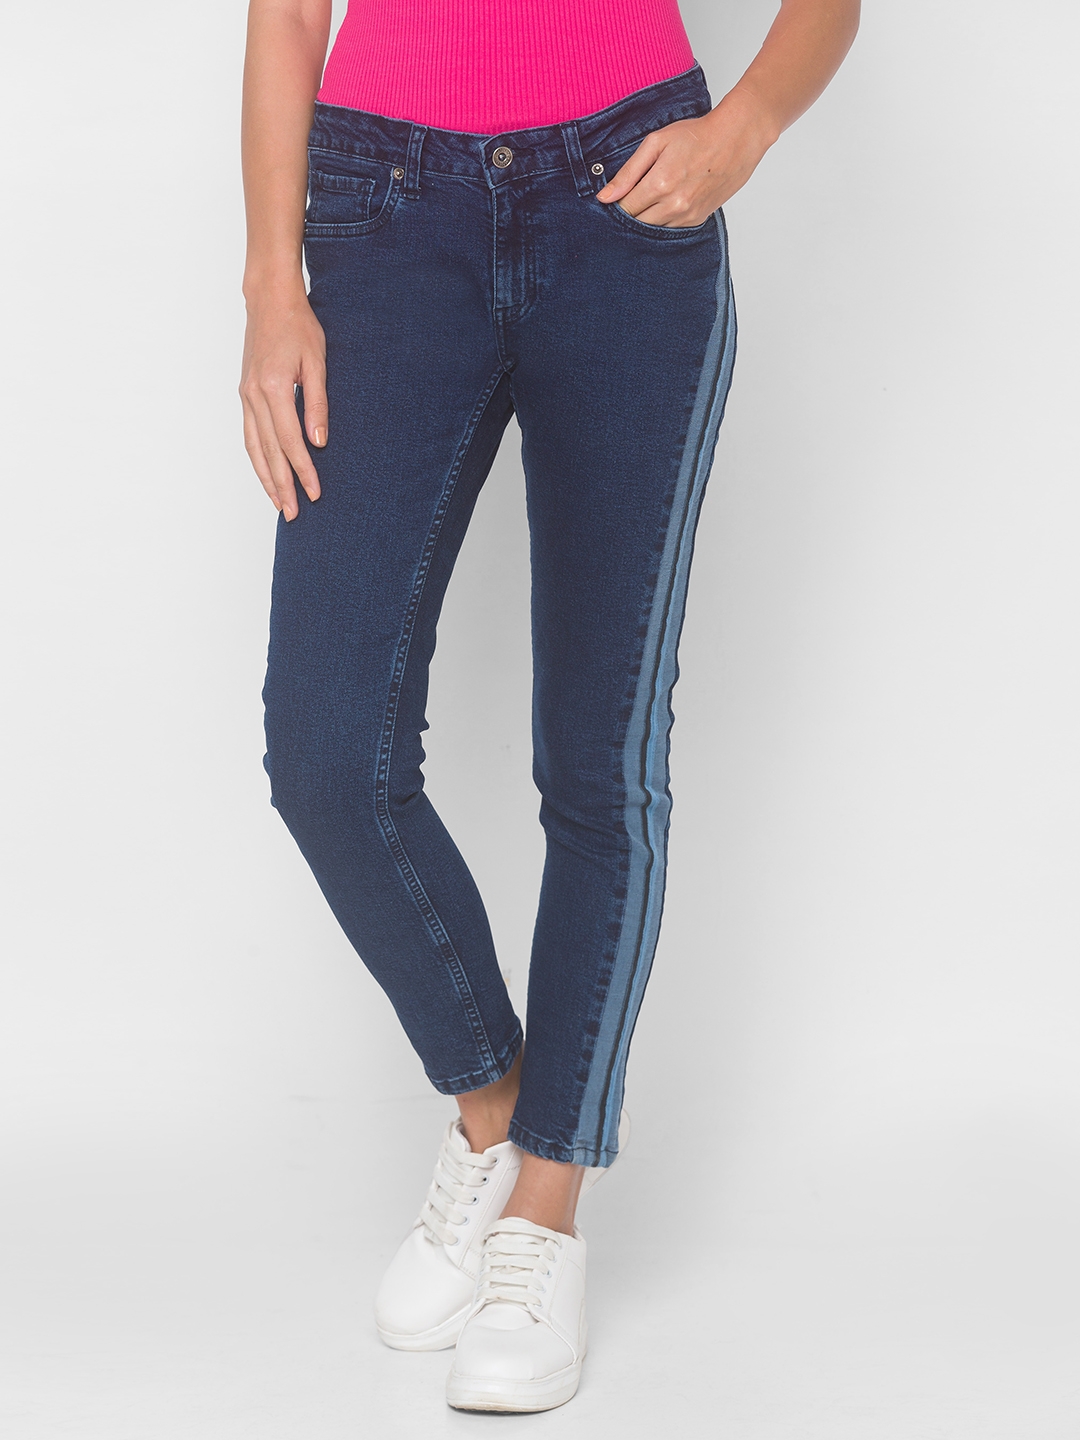 globus | Women's Blue Cotton Solid Slim Jeans 0